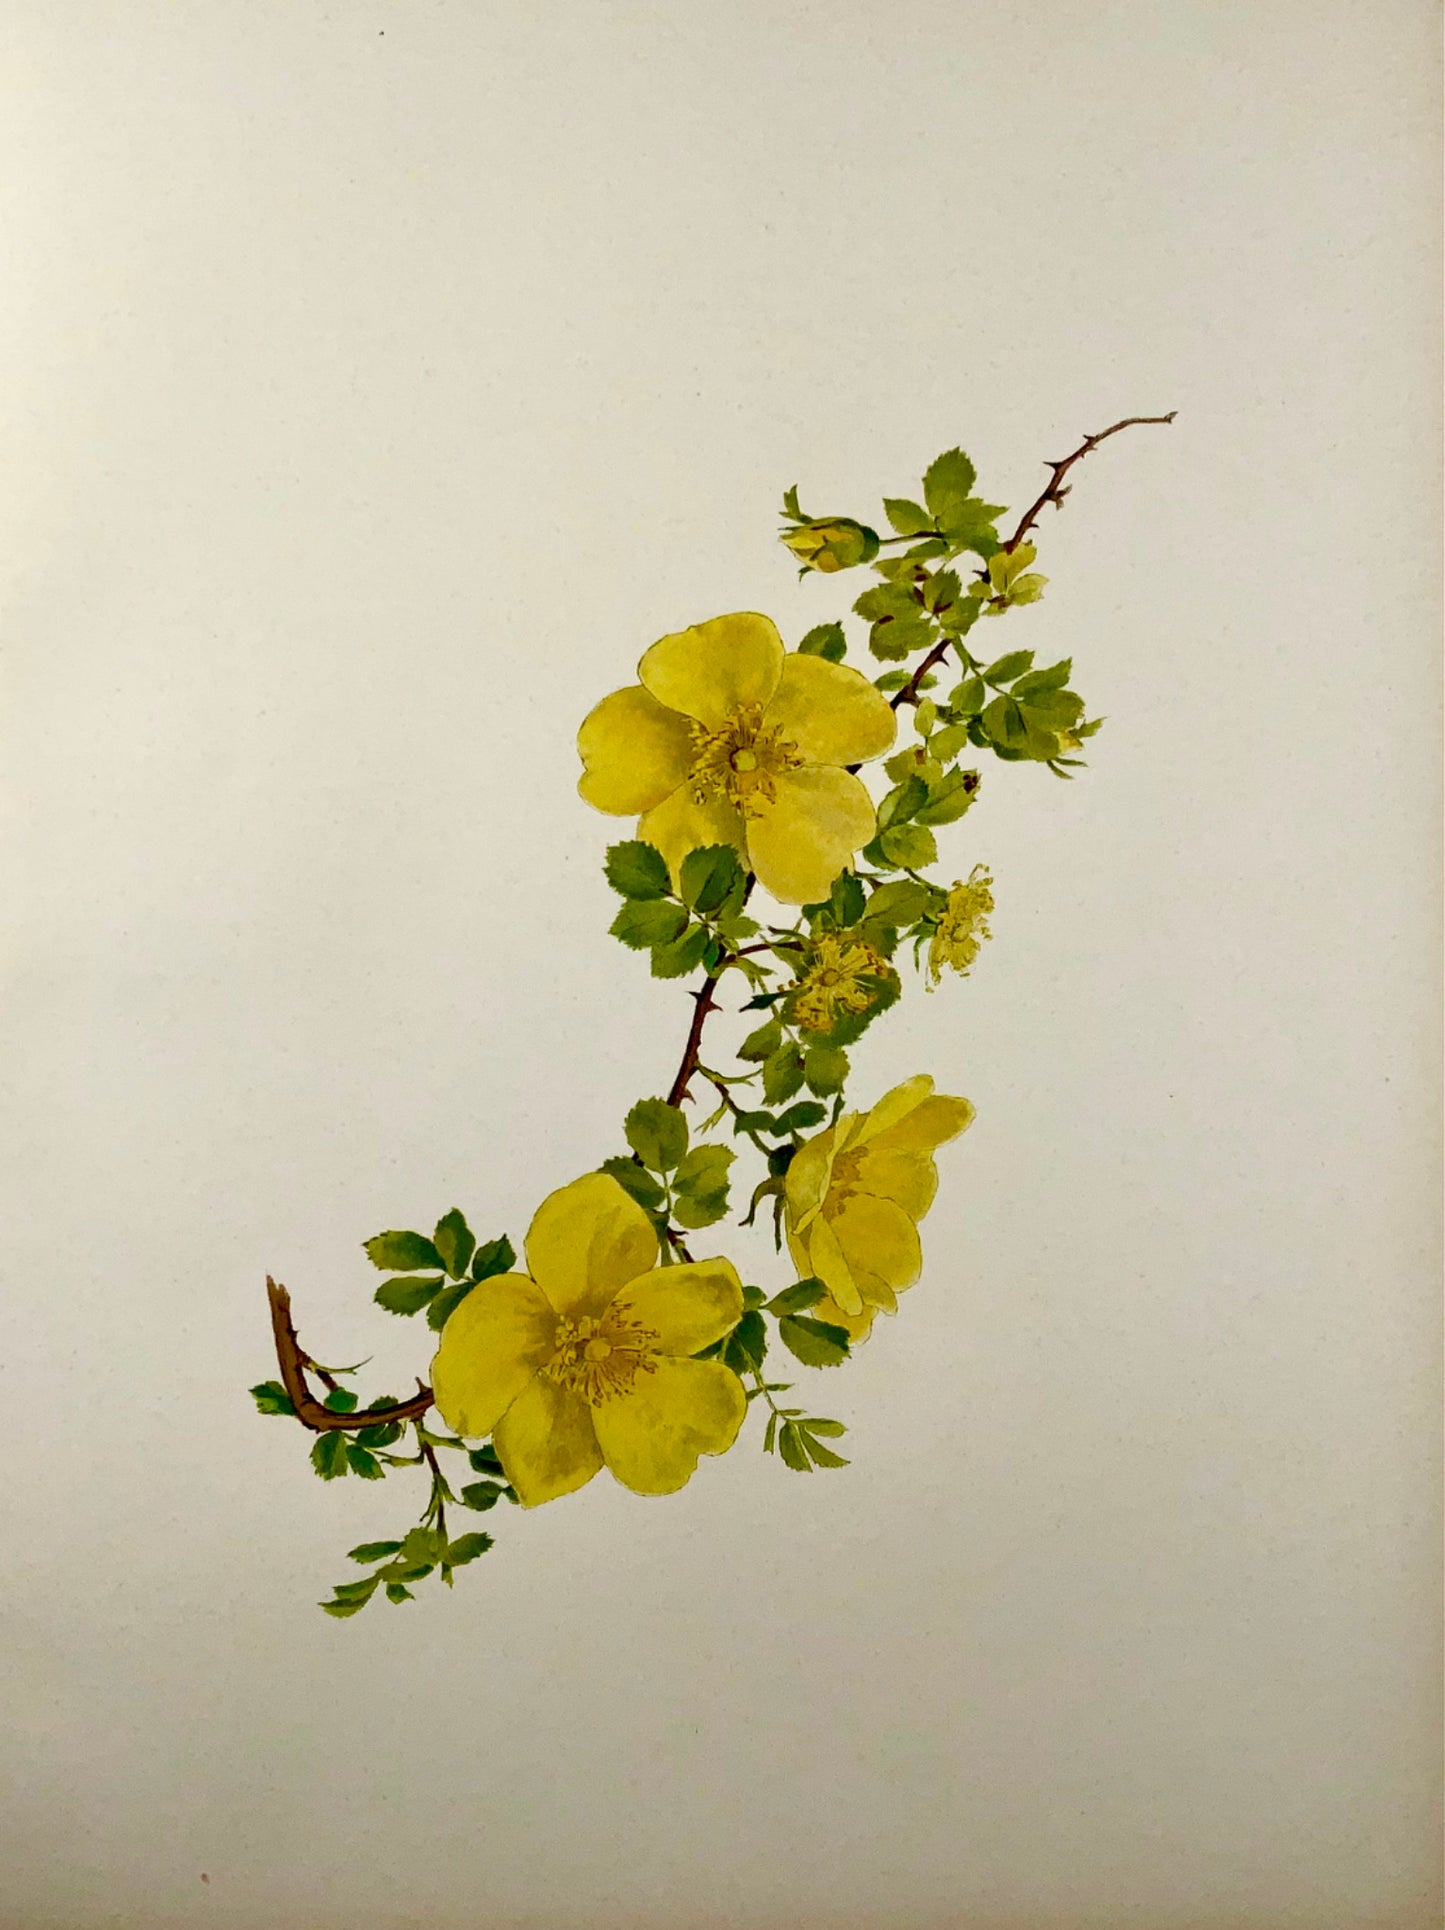 1914 Rosa gialla, foetida, foglio grande 37 cm, Willmott, EA (nato nel 1858), botanica